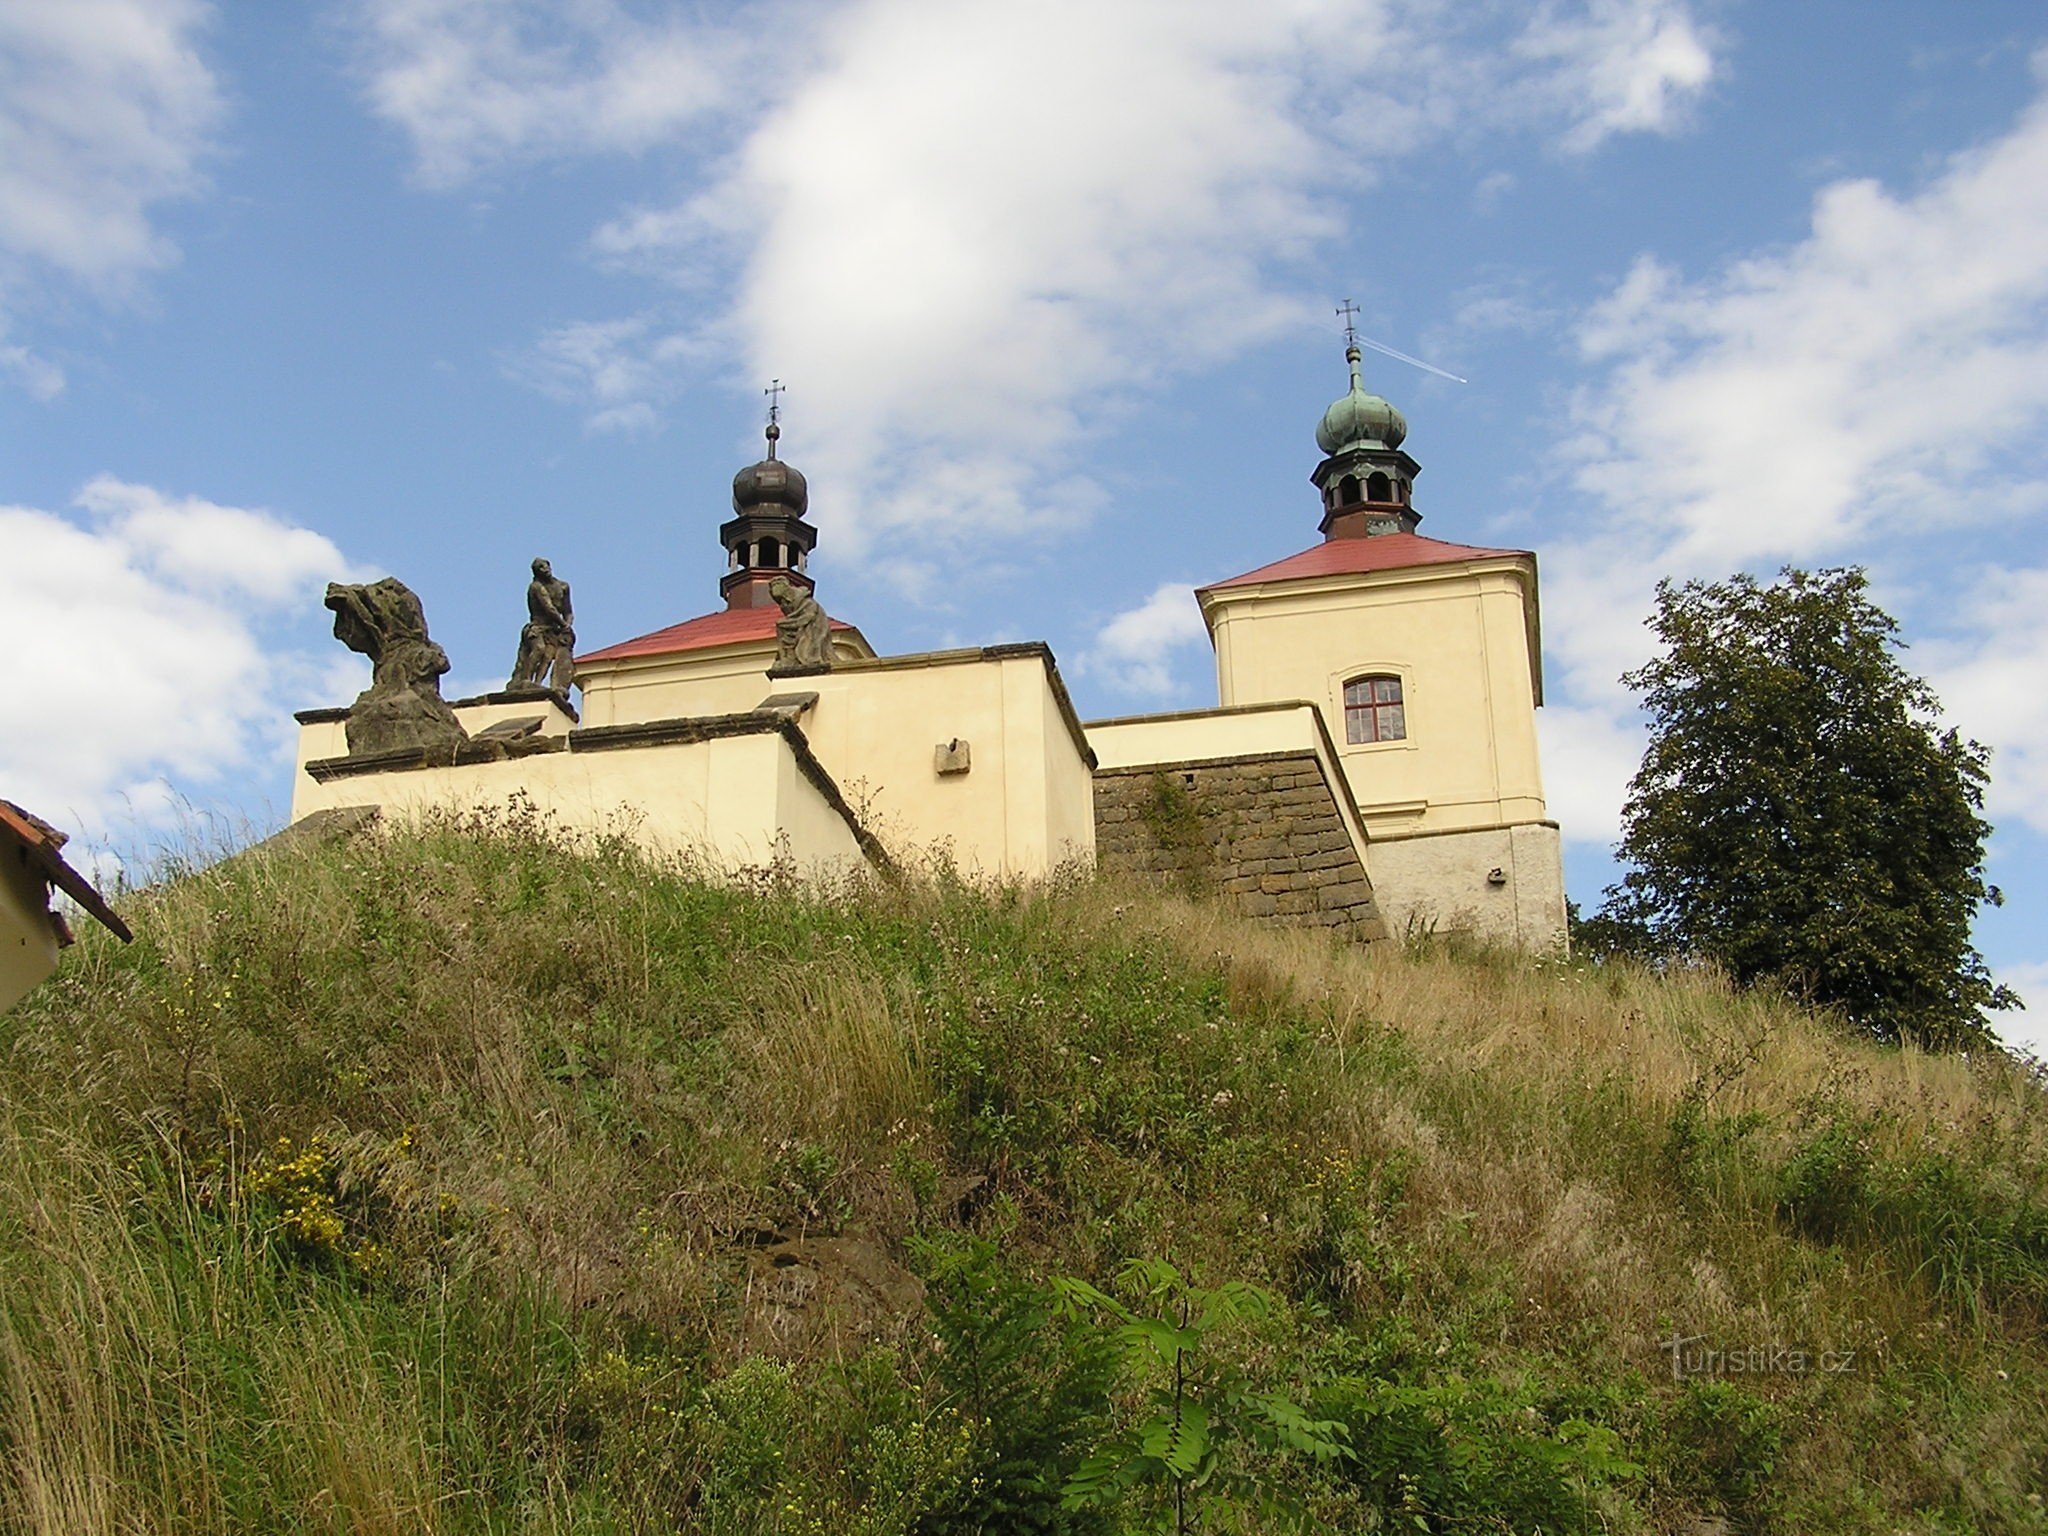 Ostré near Úštěk (8/2014)